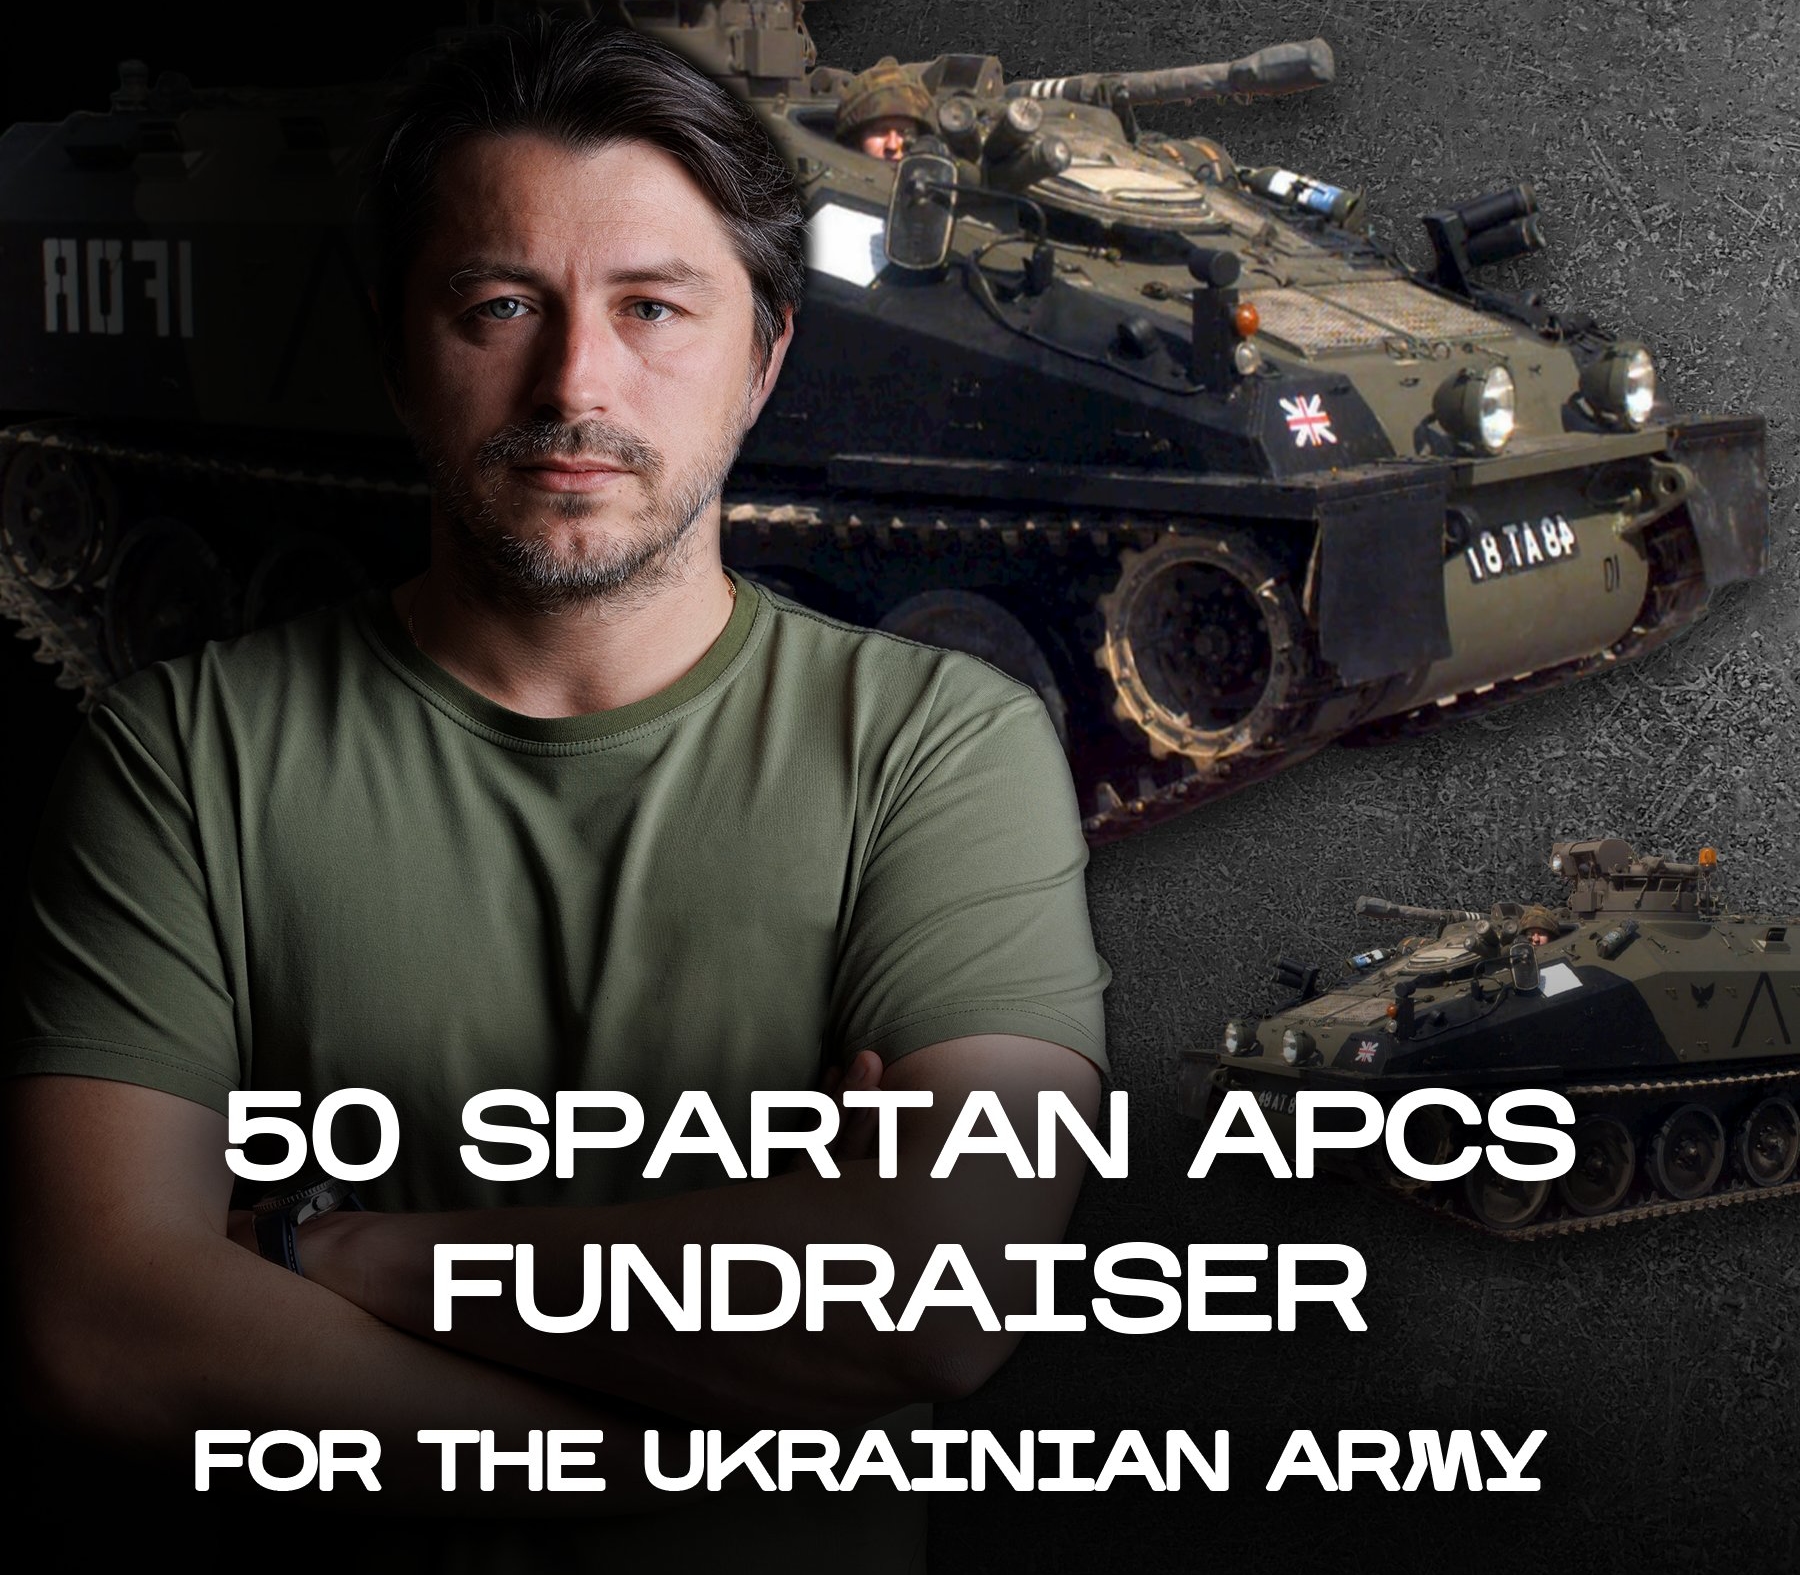 I volontari ucraini raccolgono 5.470.000 dollari e vogliono acquistare 50 carri armati cingolati Spartan britannici per l'AFU